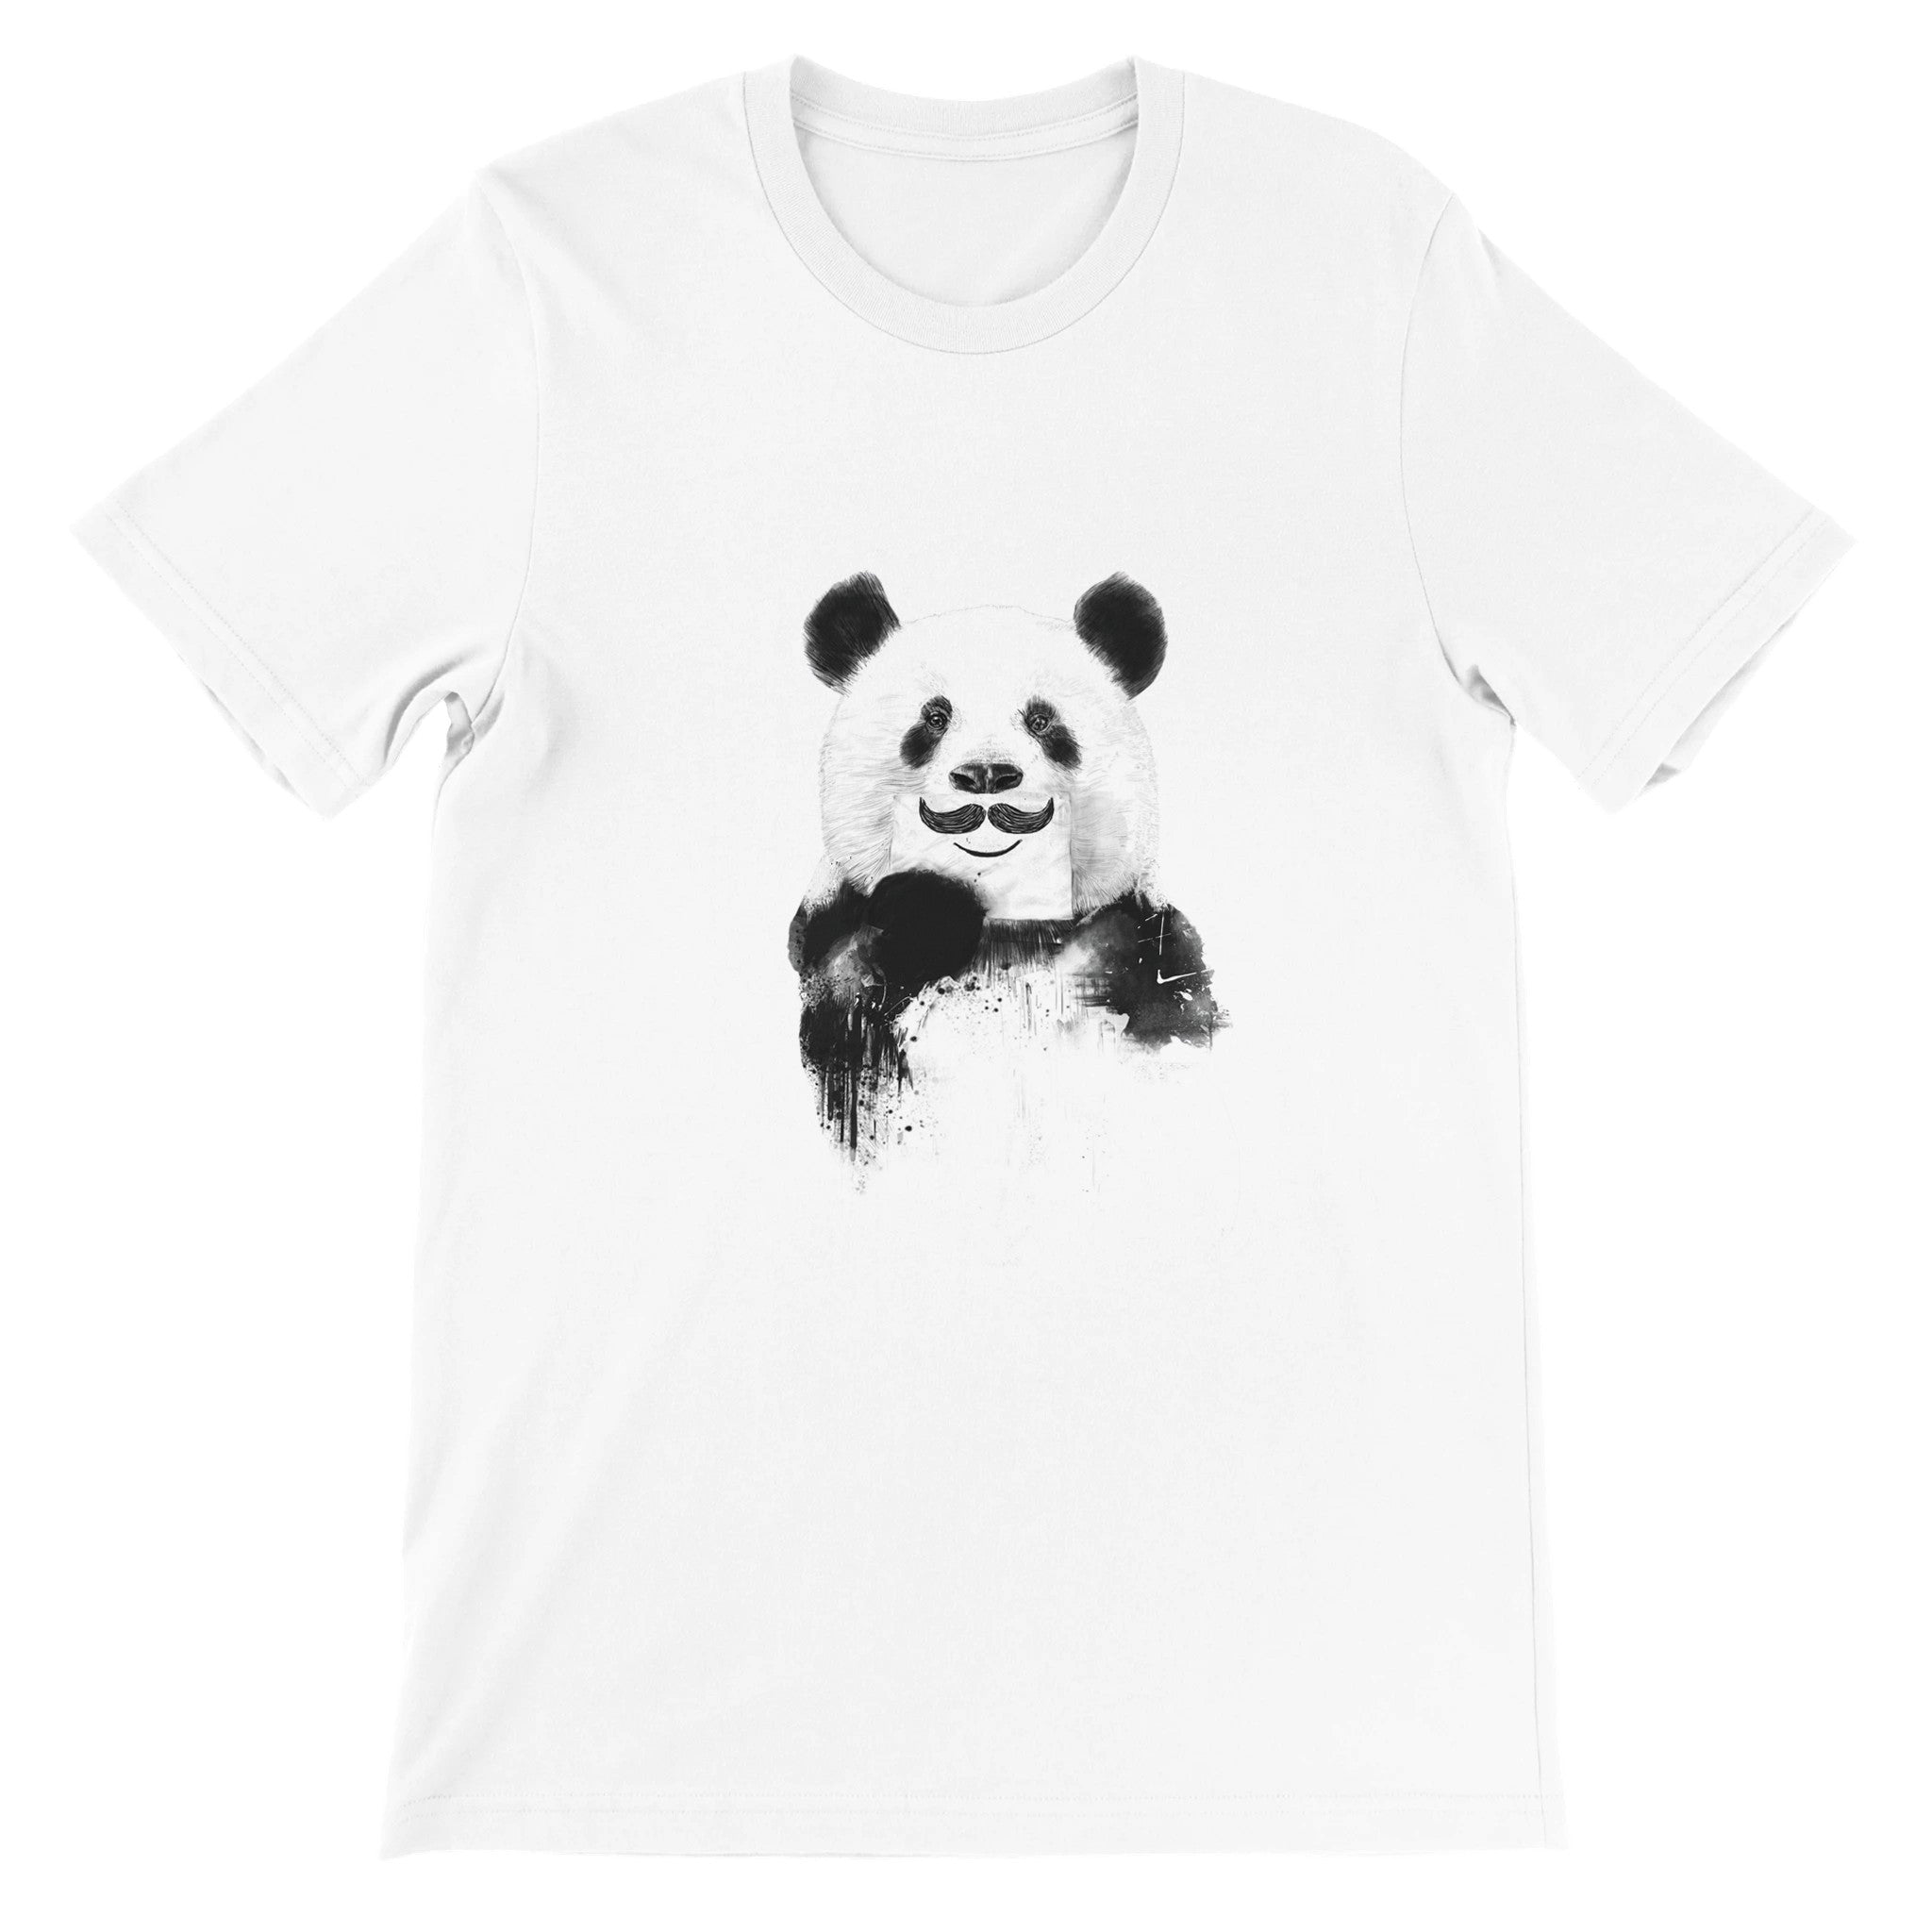 Funny Panda Crewneck T-shirt - Optimalprint